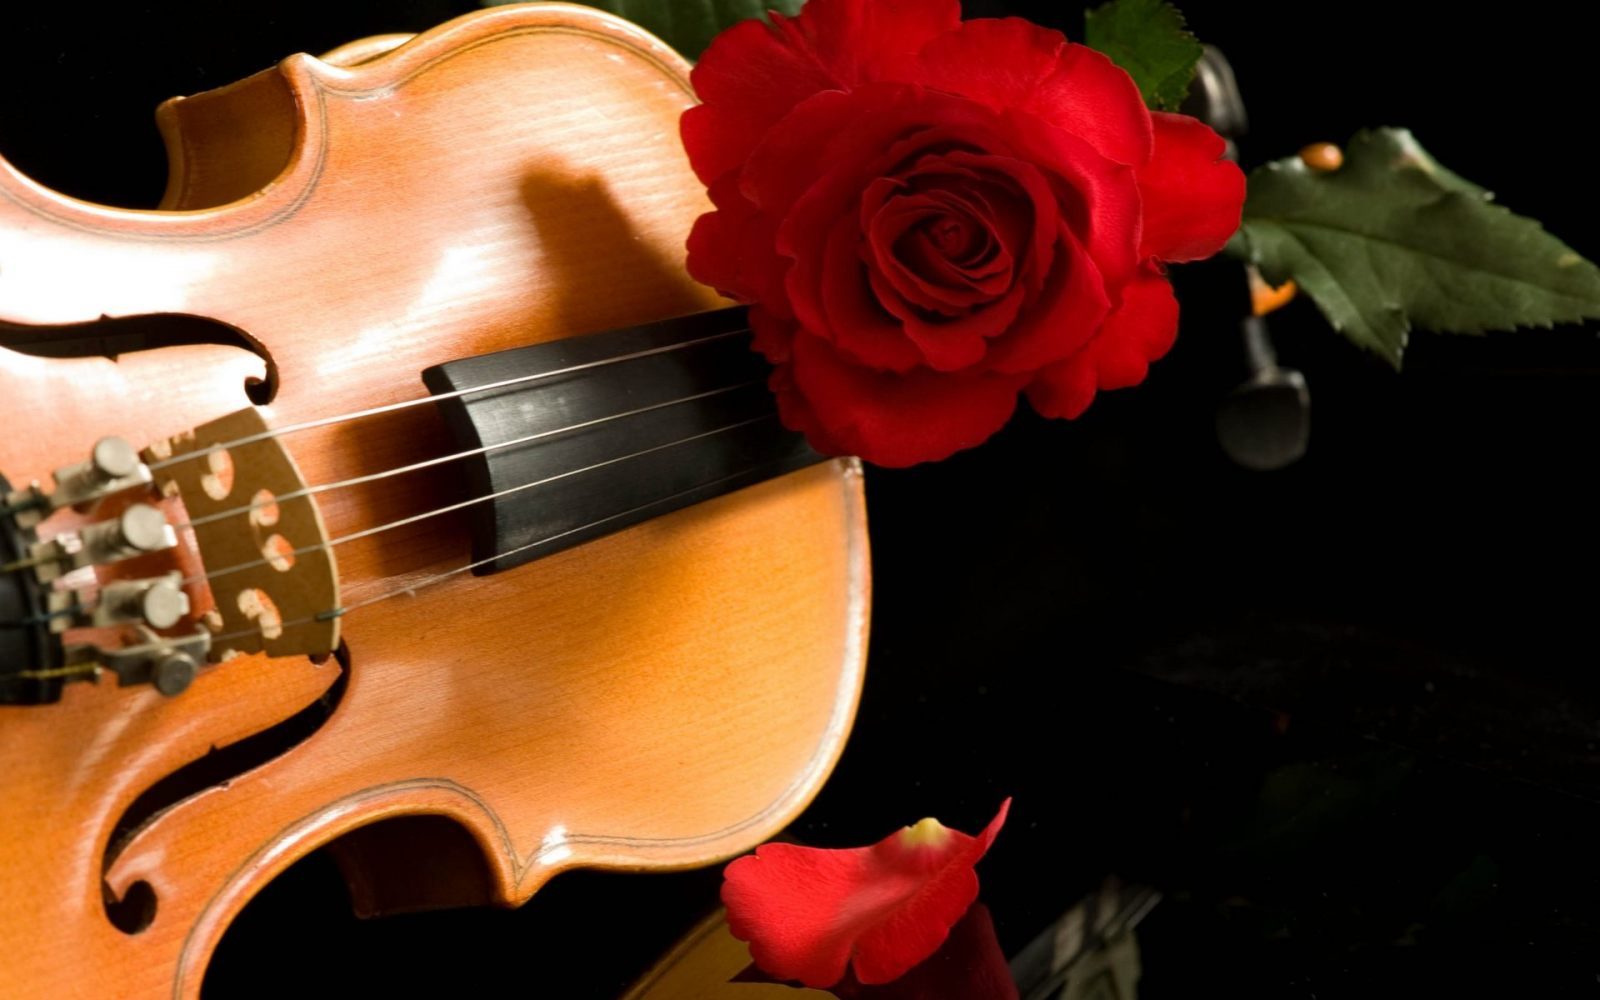 Las rosas y la música